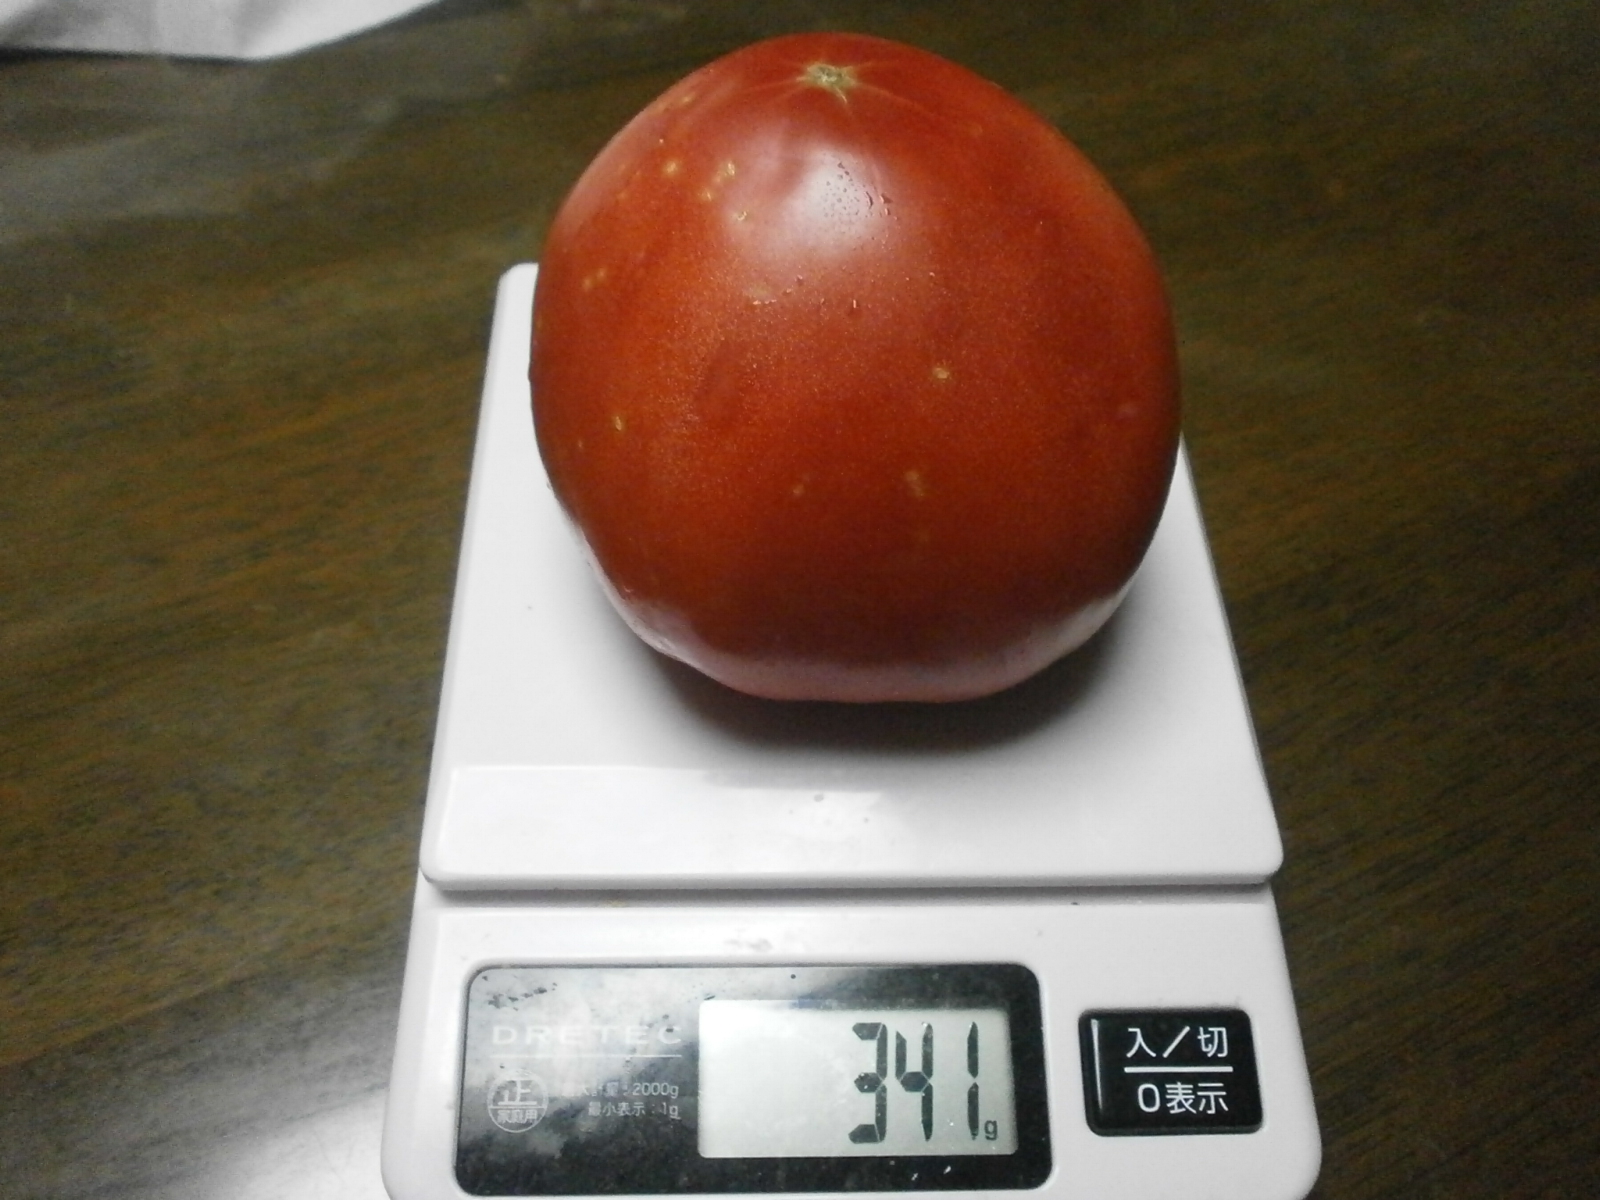 Tomato (341g/332g)